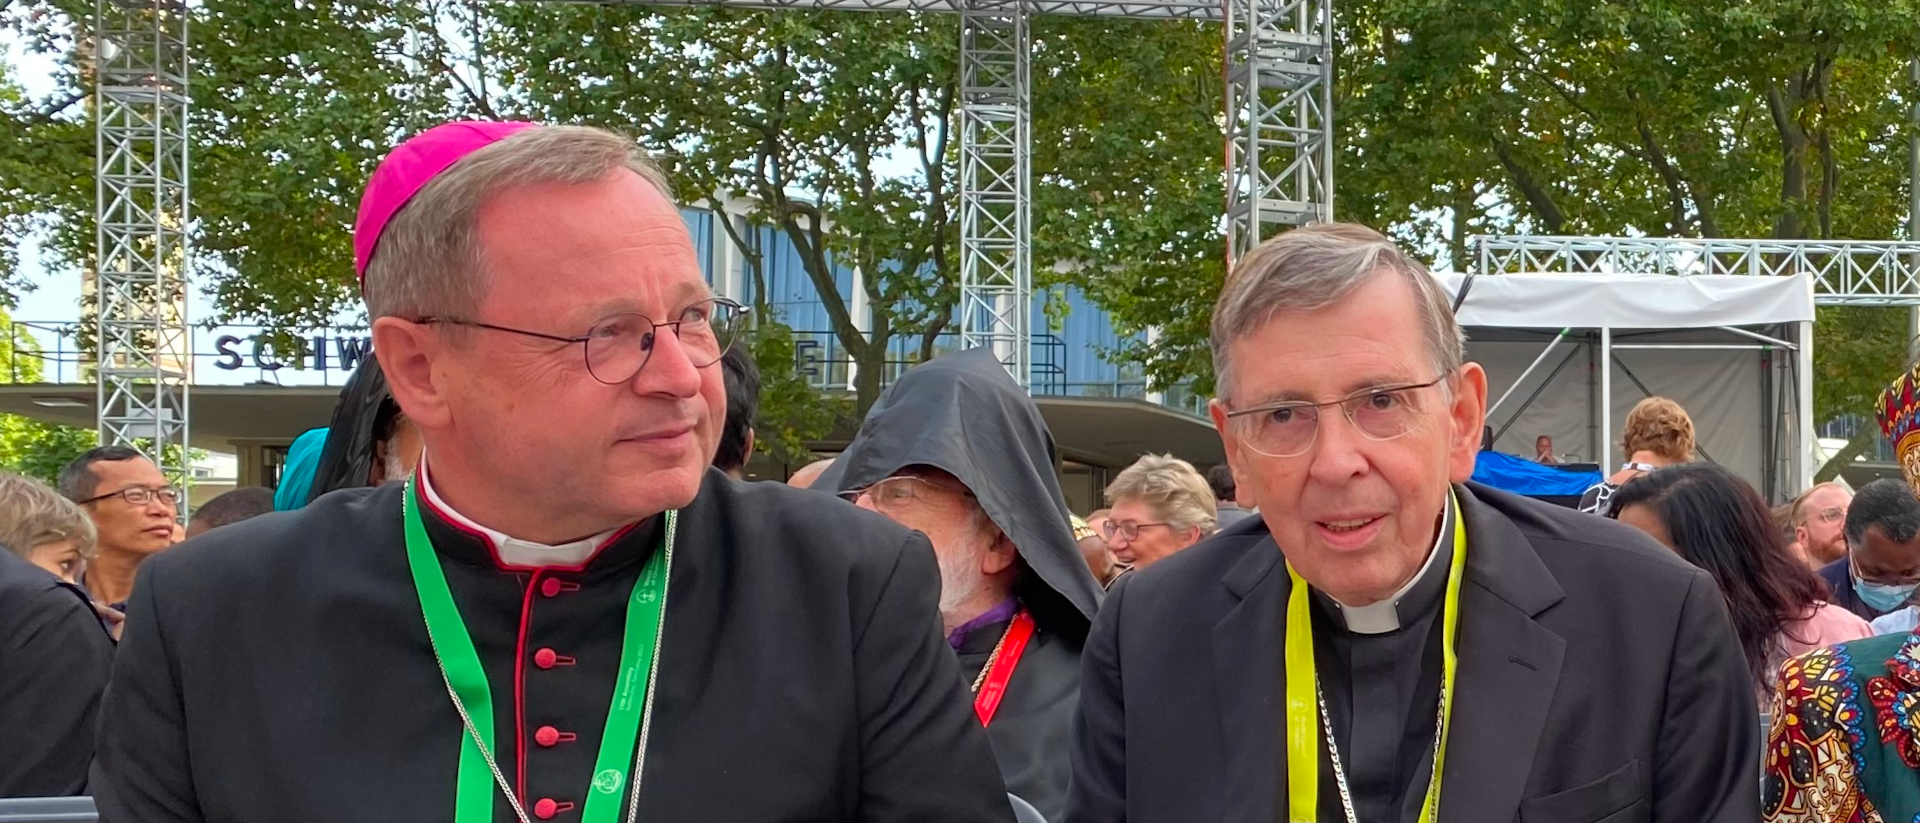 Mgr Georg Bätzing a rencontré le cardinal Kurt Koch à Rome à propos de la polémique sur le chemin synodal allemand | © Raphael Rauch/Kath.ch